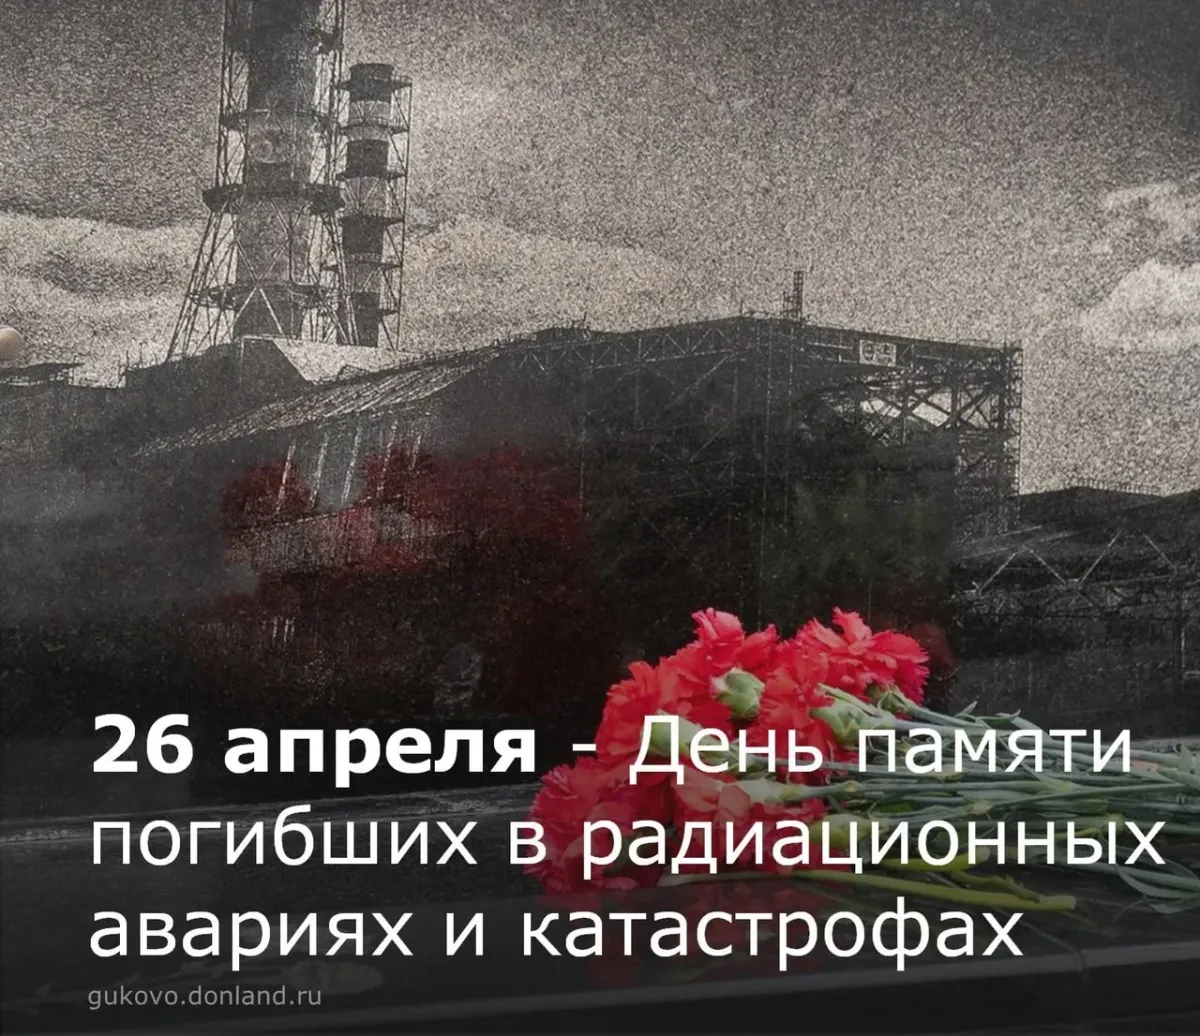 26 апреля день чернобыльской. 26 Апреля день памяти погибших в радиационных авариях и катастрофах. 26 Апреля 1986 года. 1986 26 Апреля катастрофа. День памяти Чернобыльской трагедии.